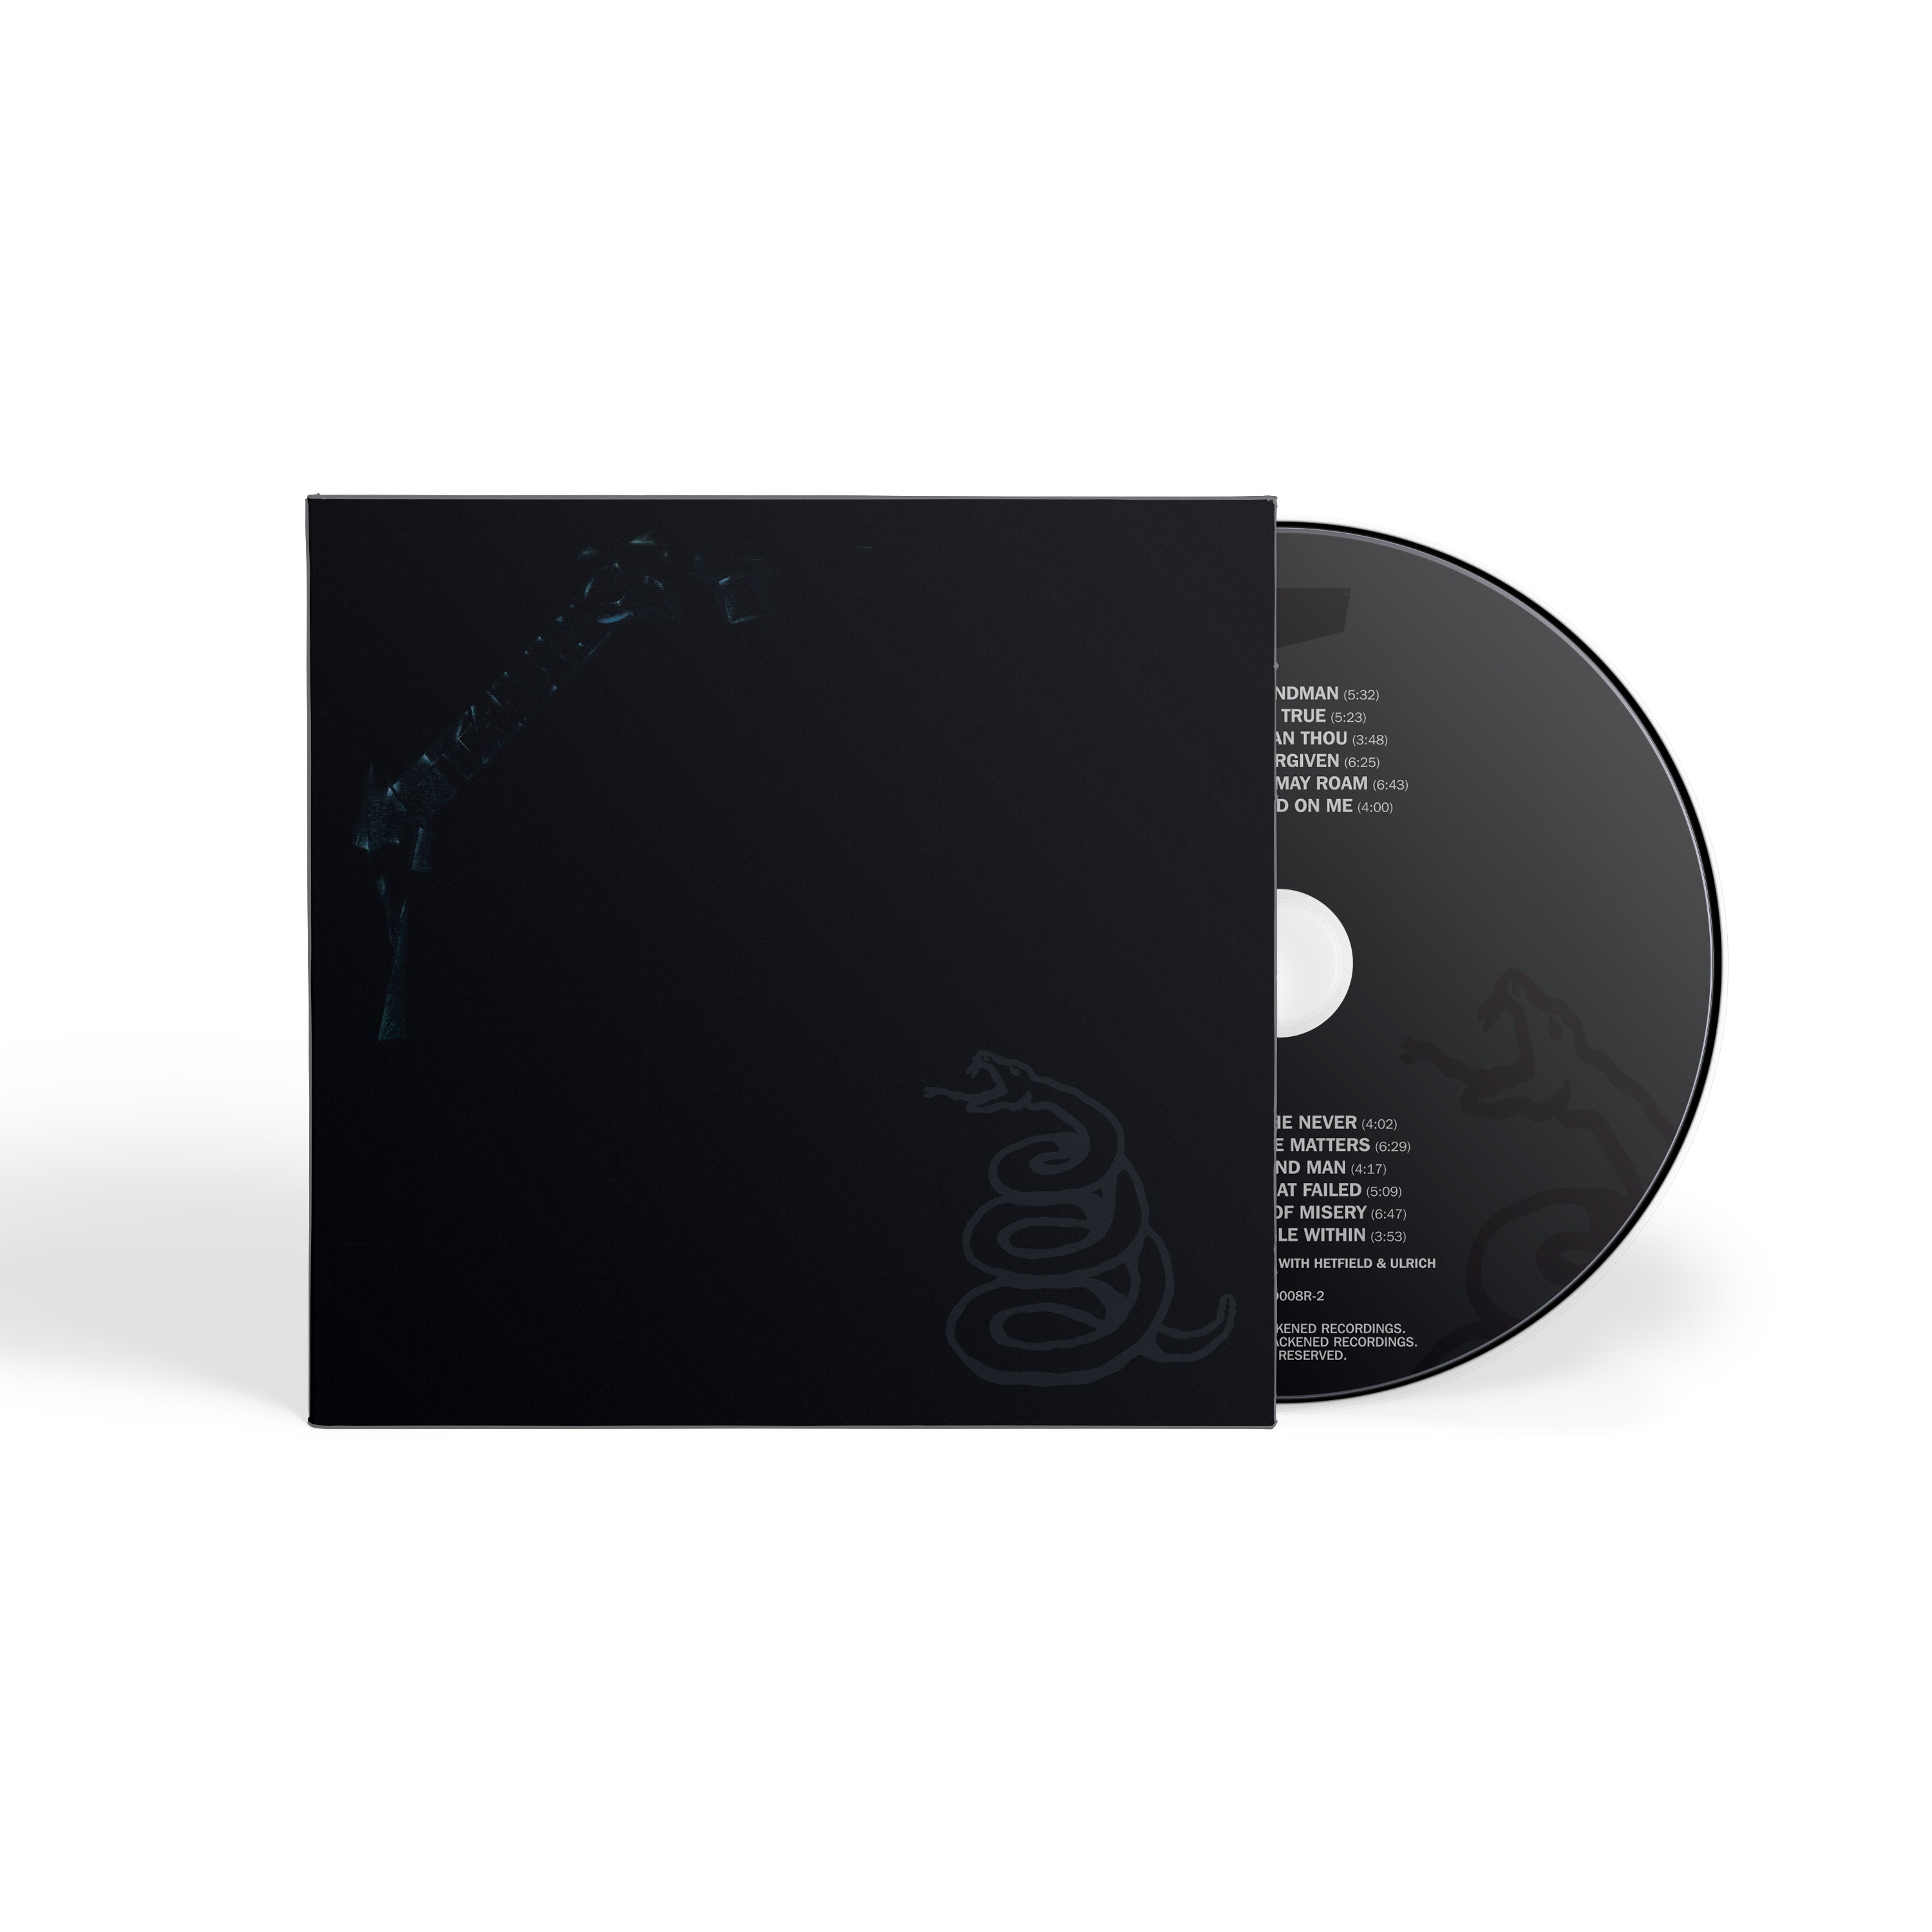 METALLICA (The Black Album) - CD –